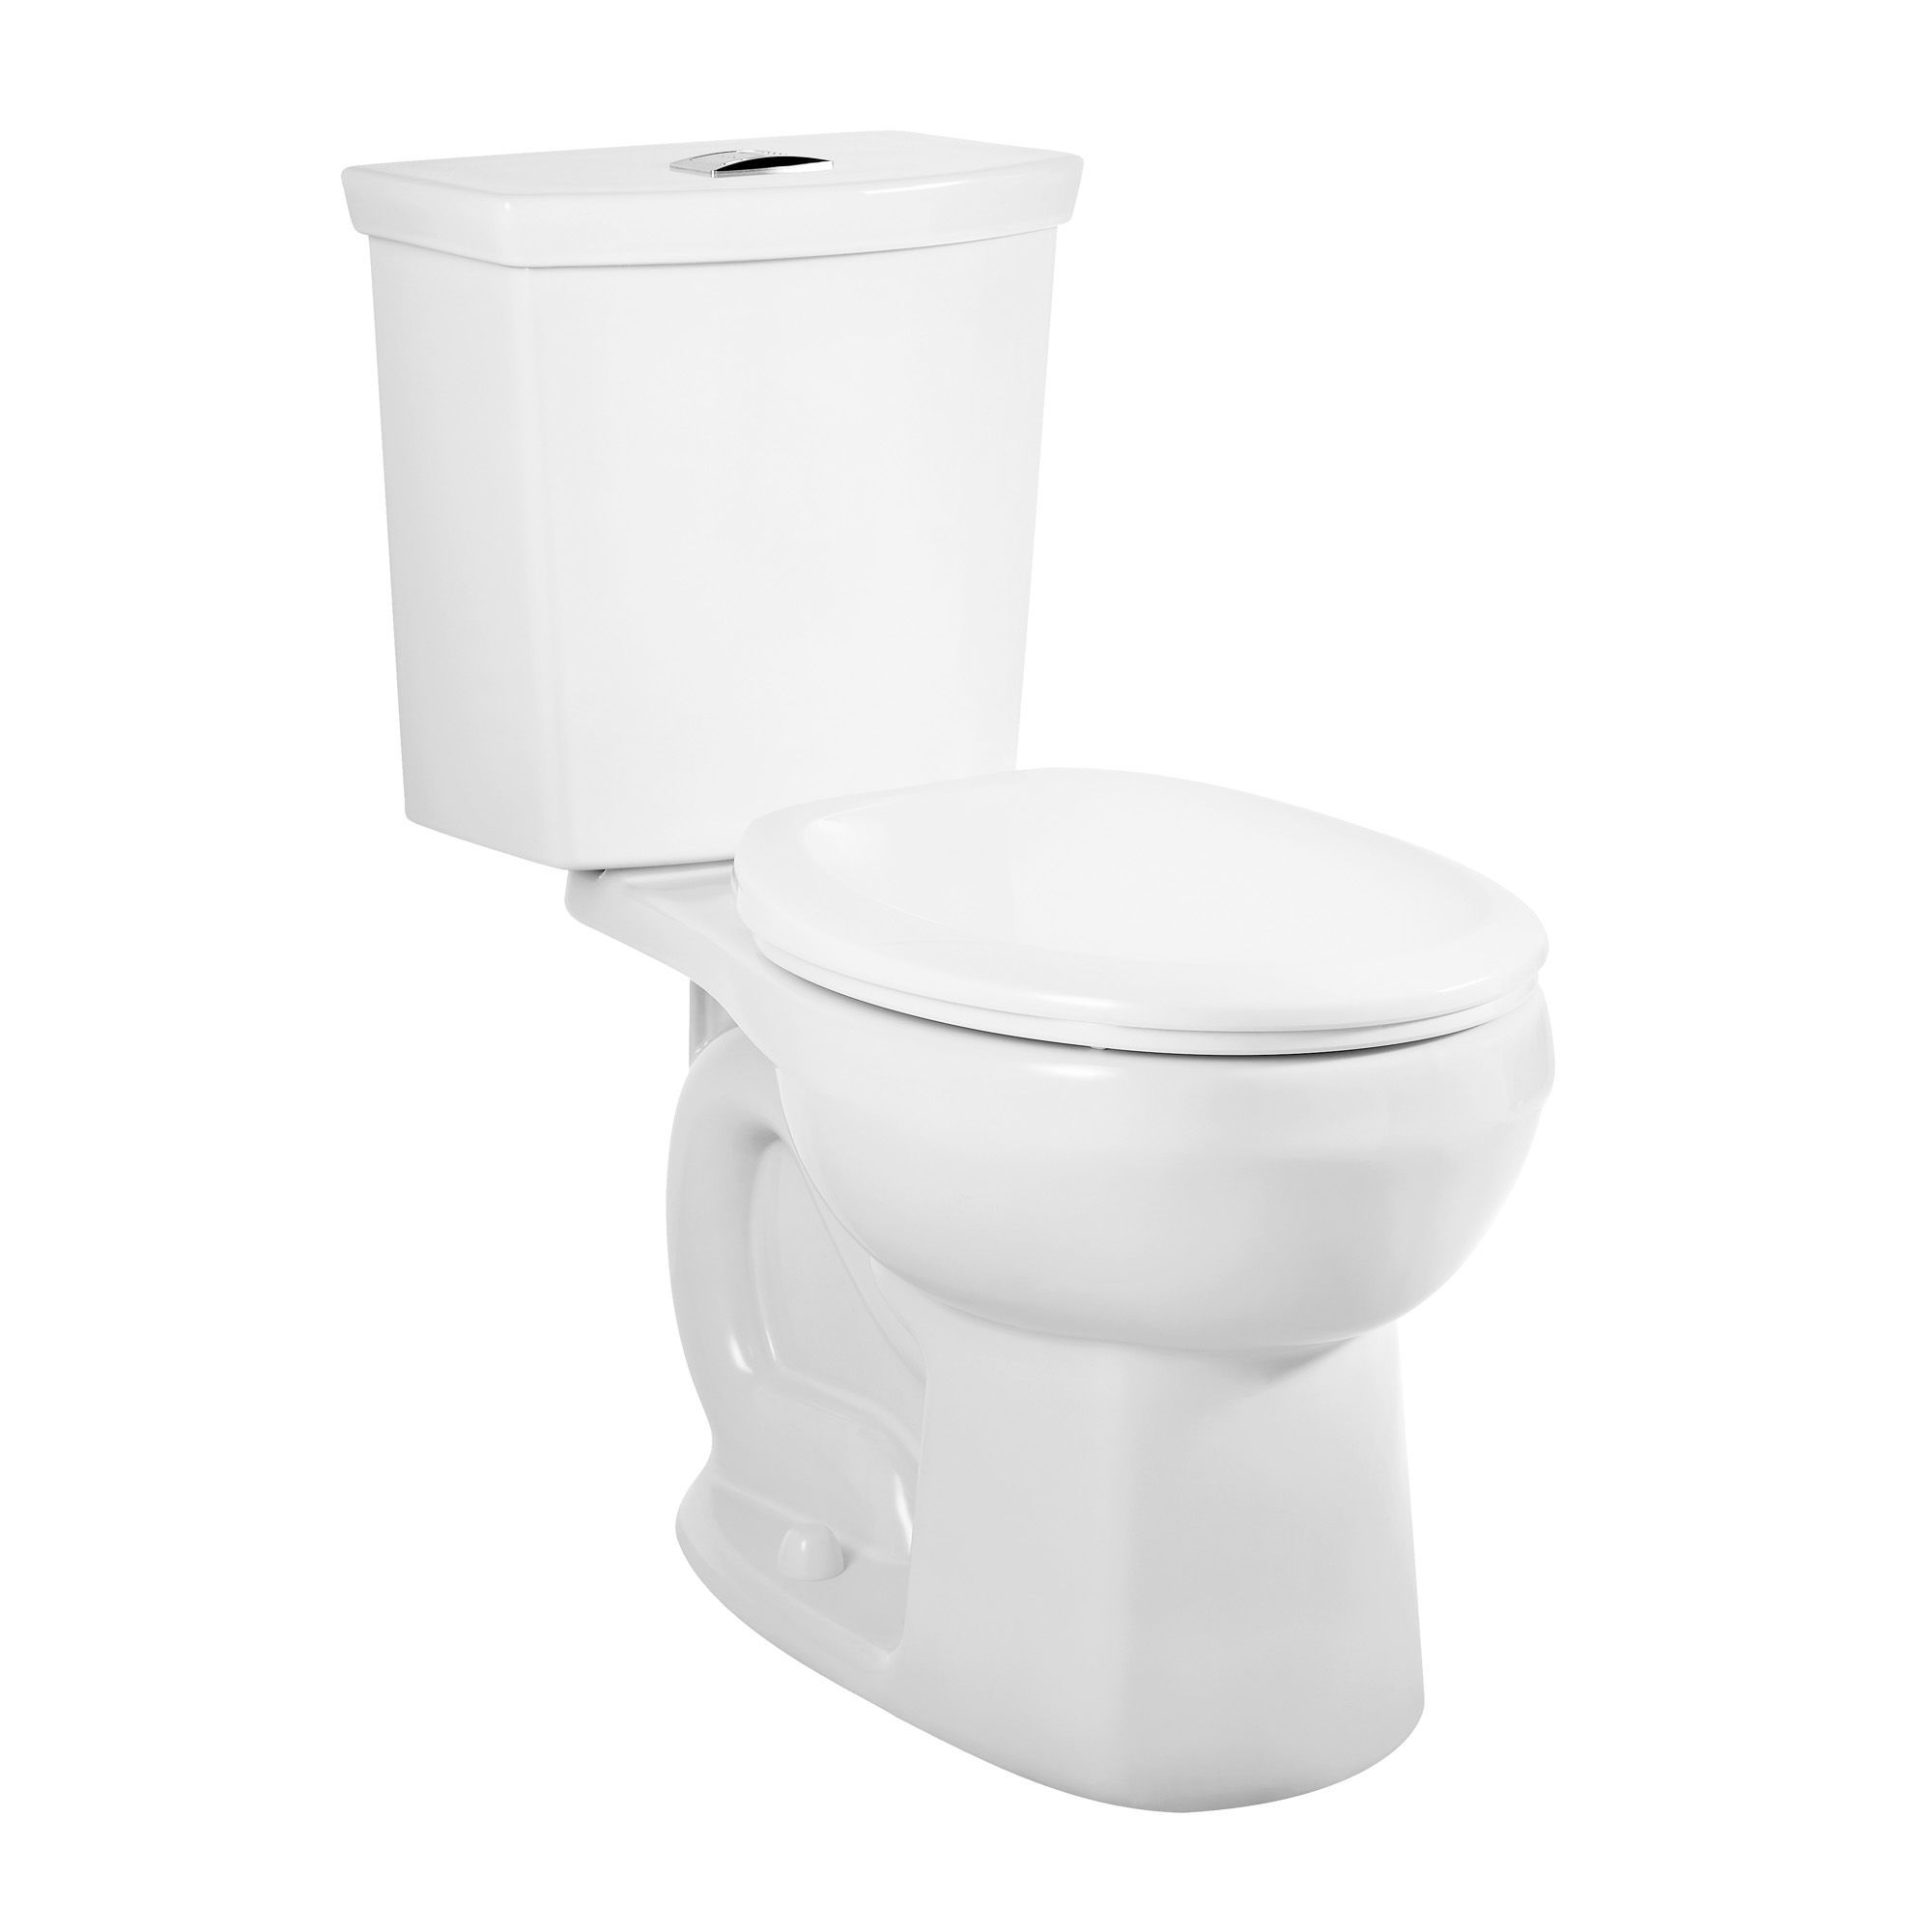 Toilette allongée à chasse d'eau unique American Standard Decor